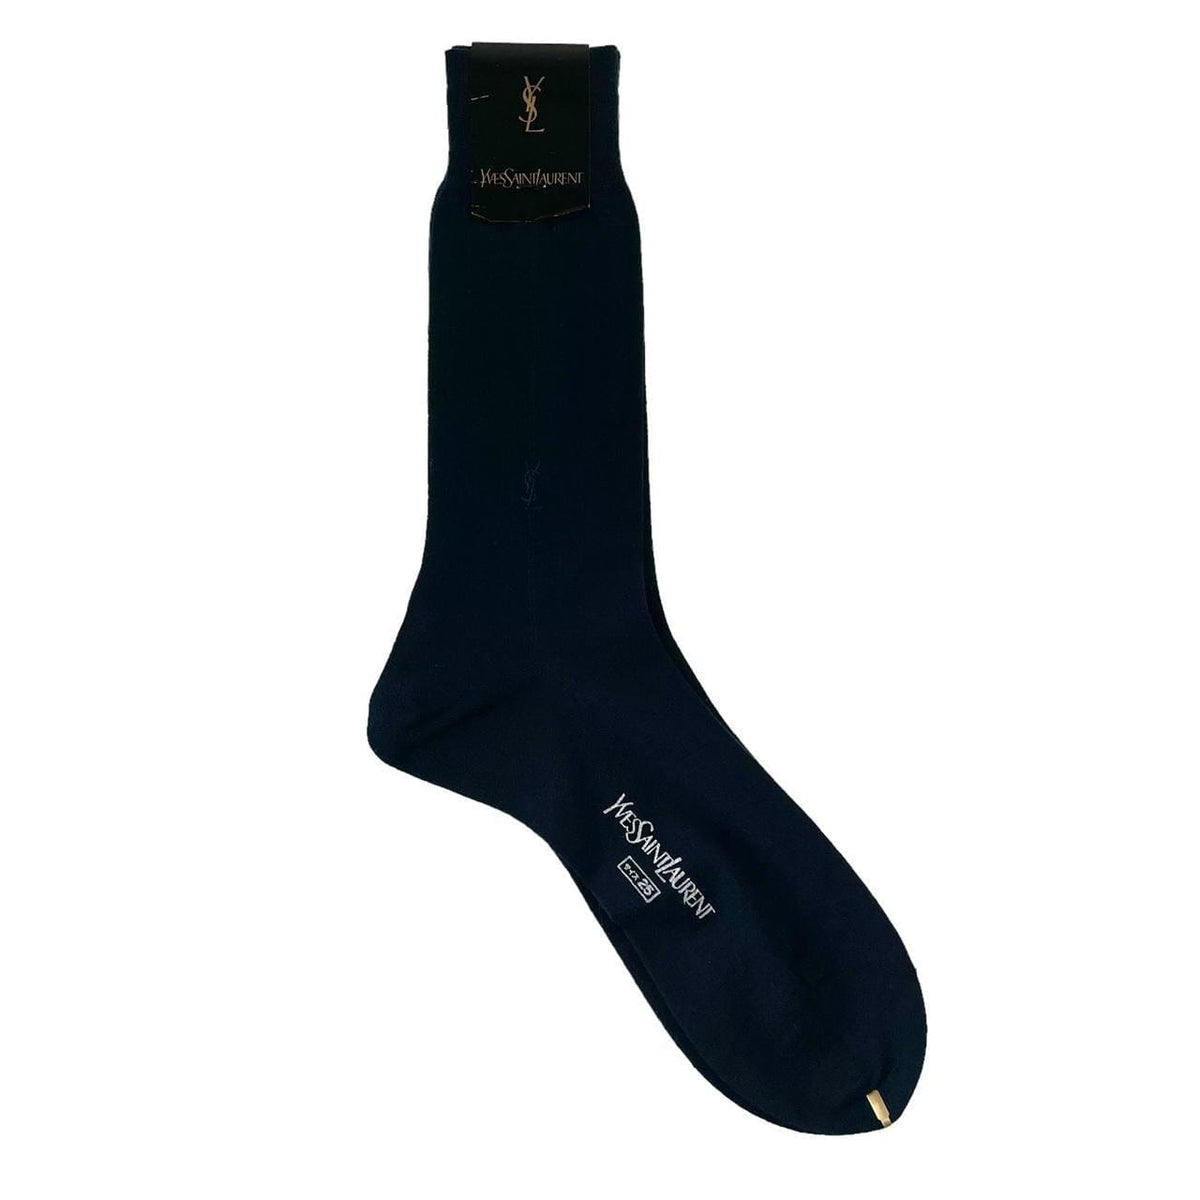 Vintage YSL Yves Saint Laurent pair of socks